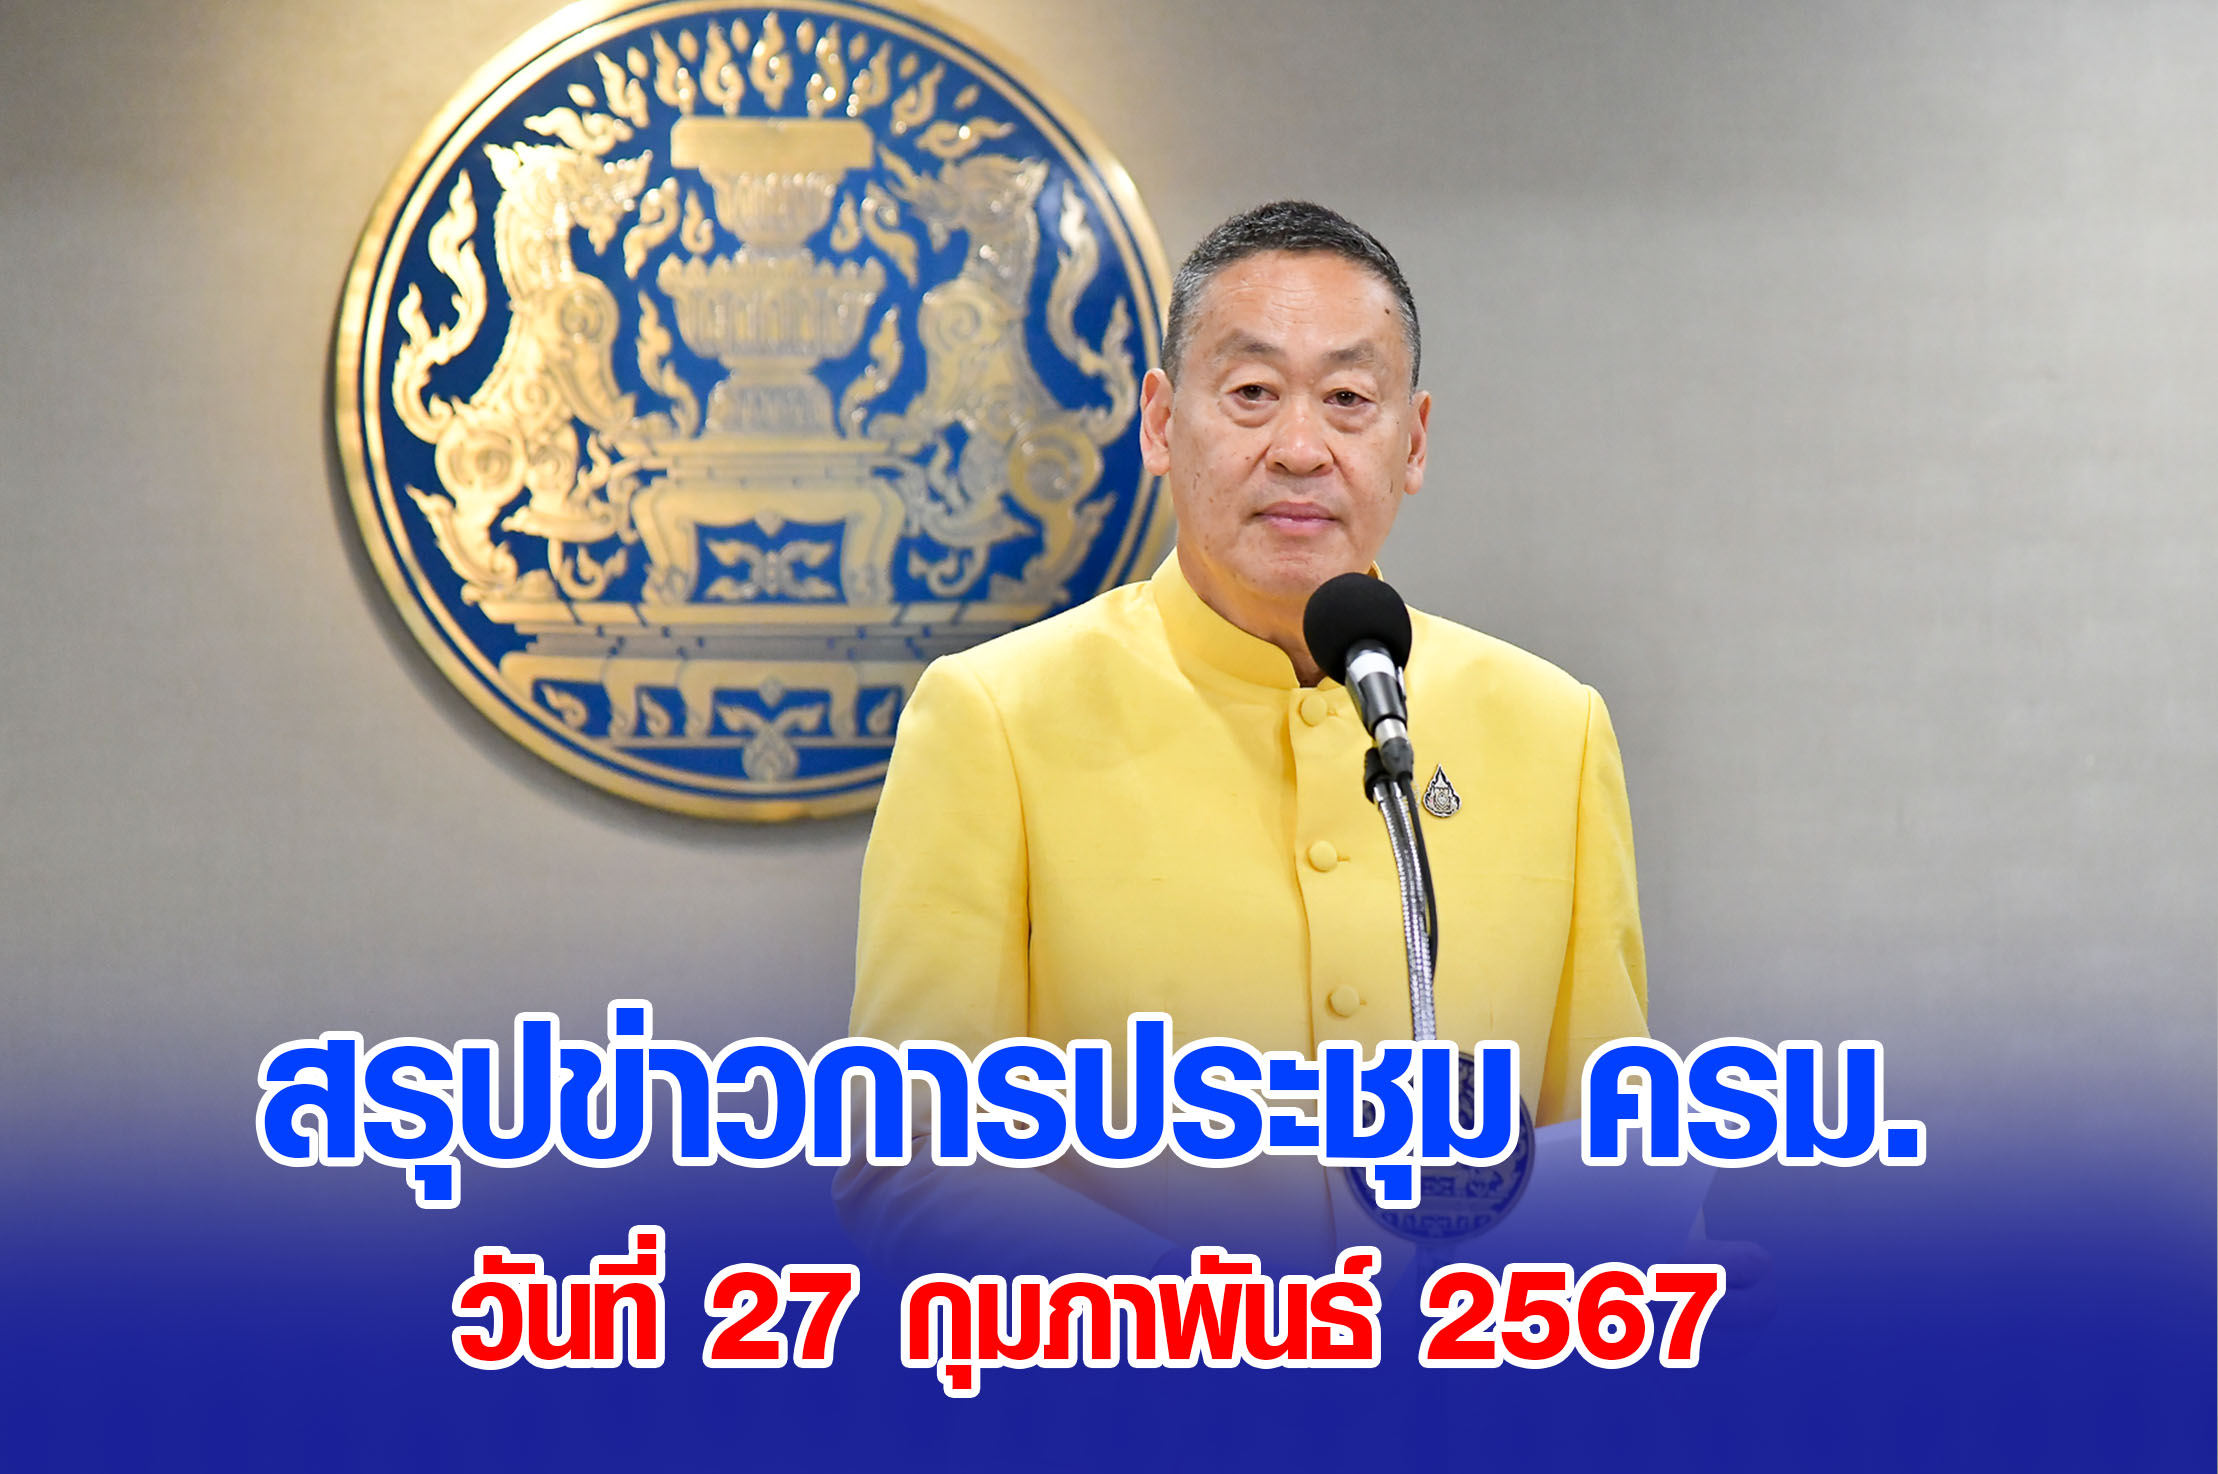 สรุปข่าวการประชุมคณะรัฐมนตรี 27 กุมภาพันธ์ 2567